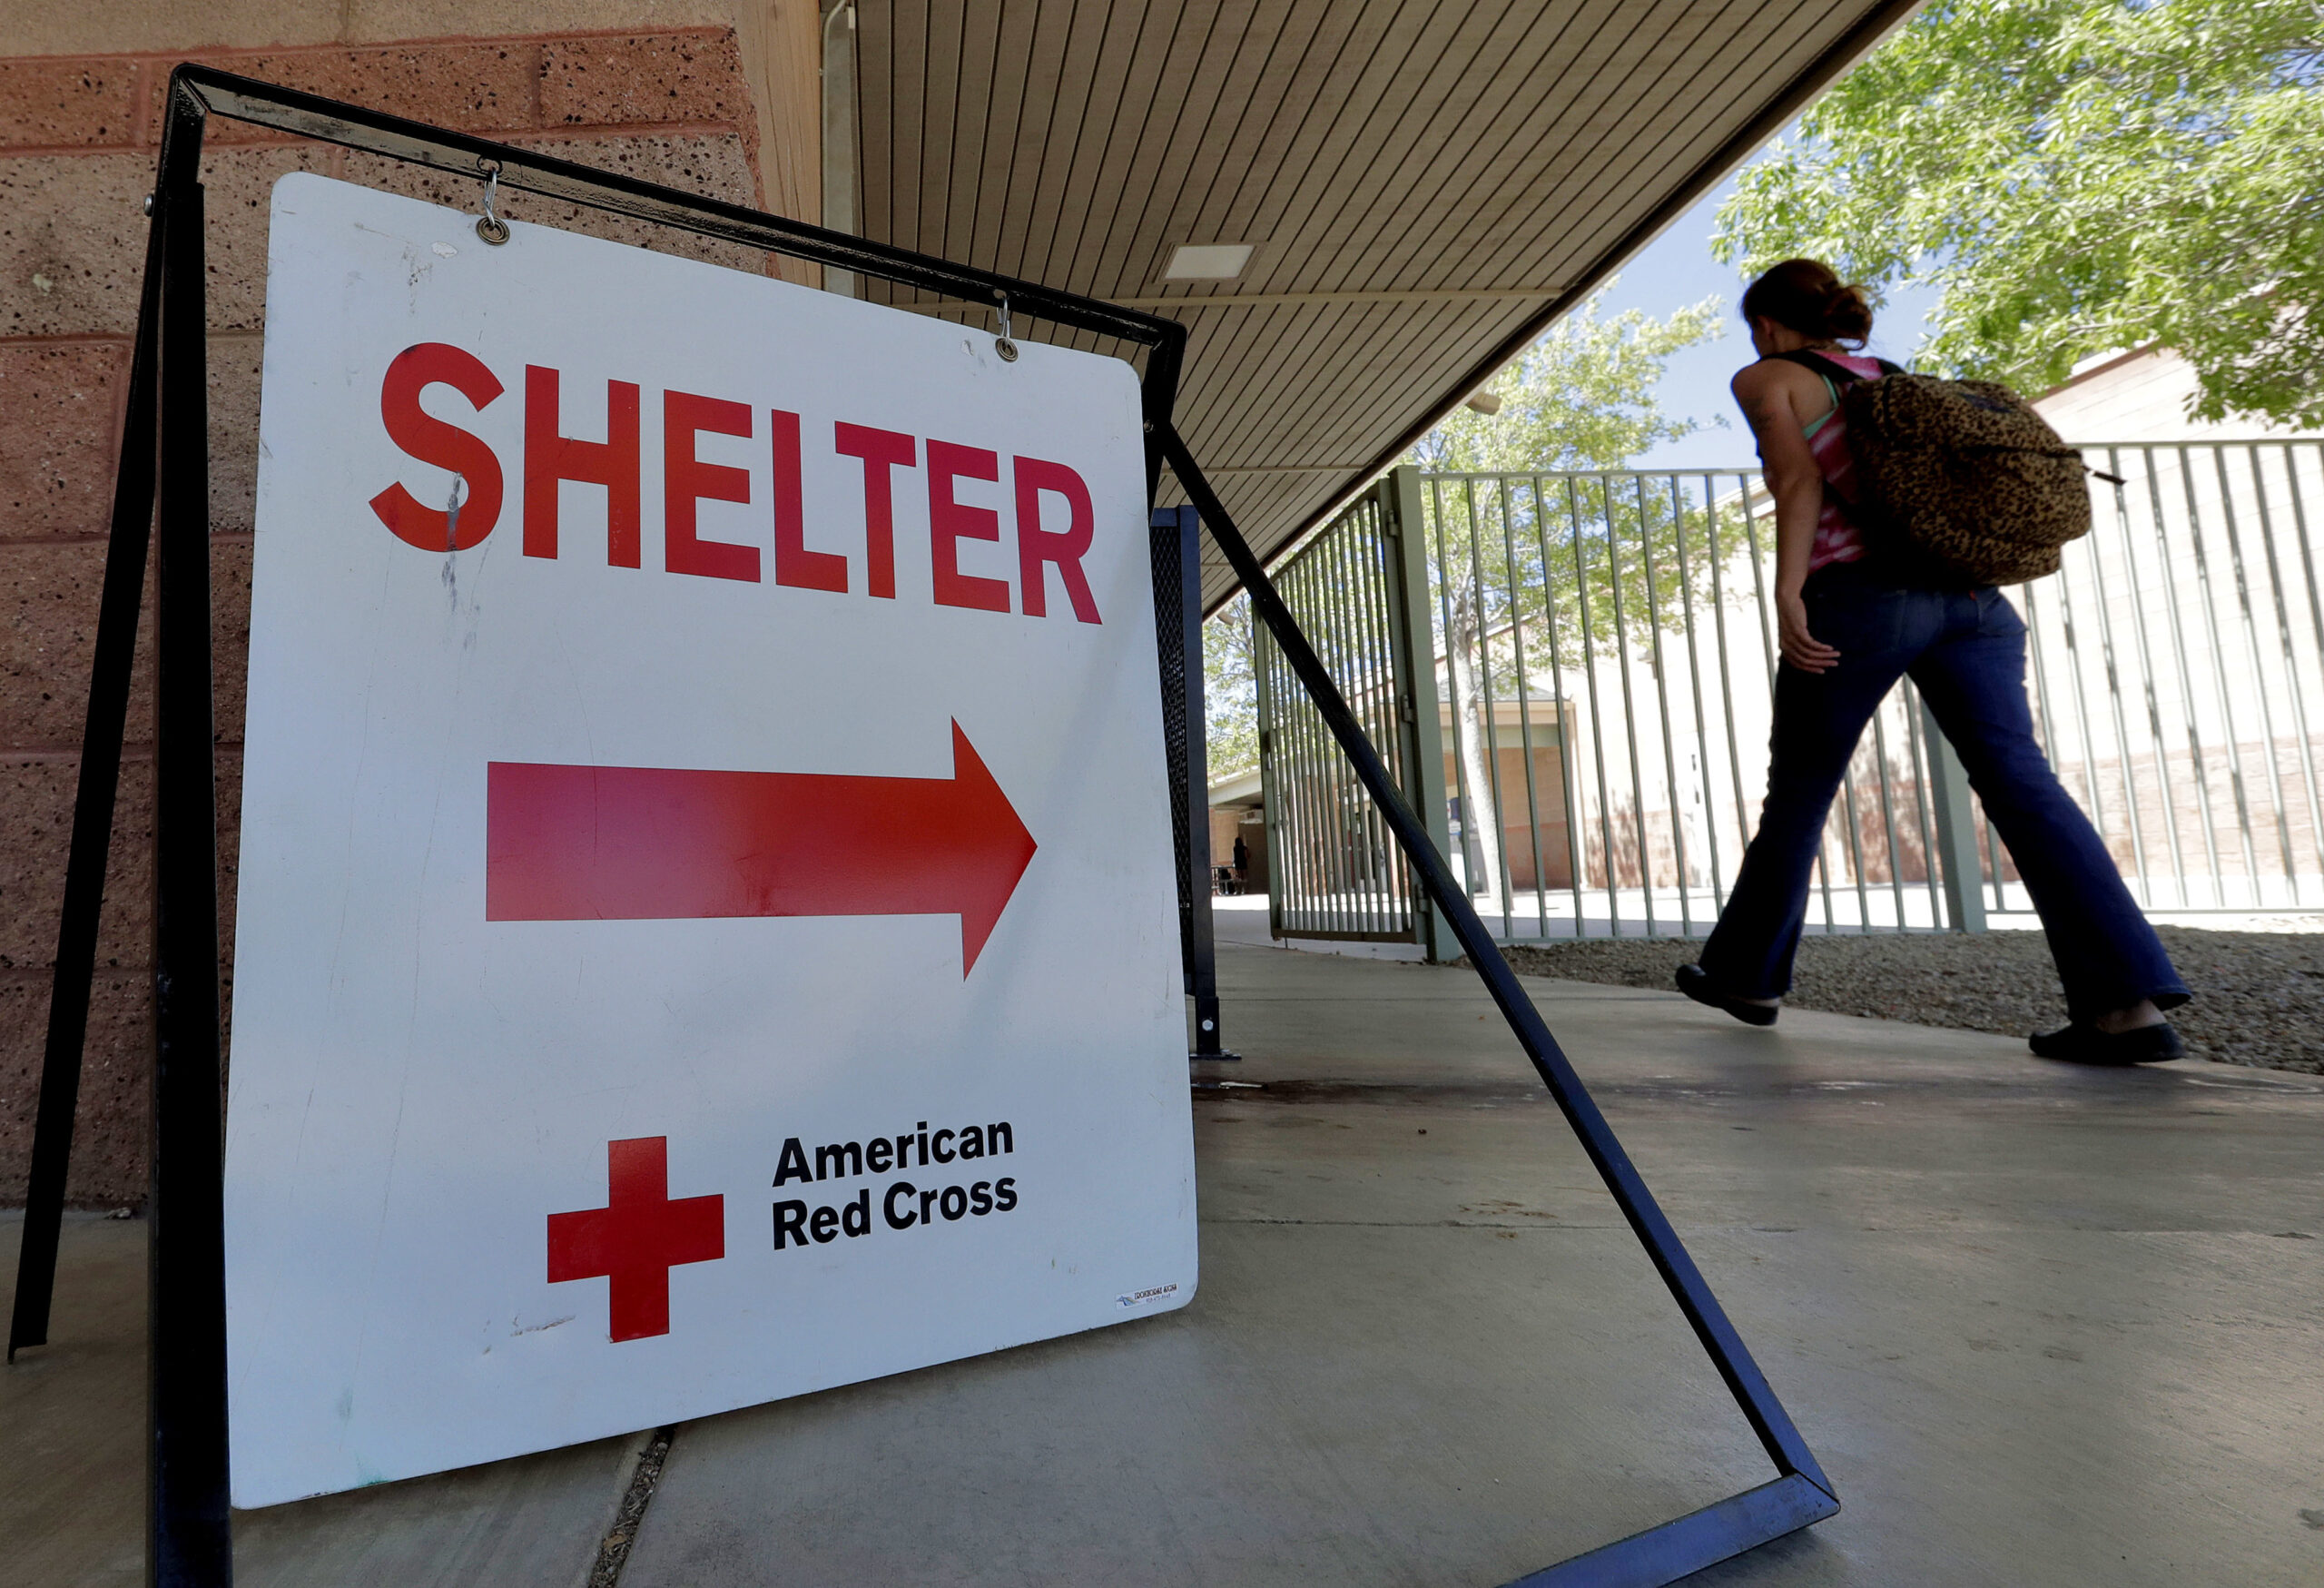 Red Cross shelter